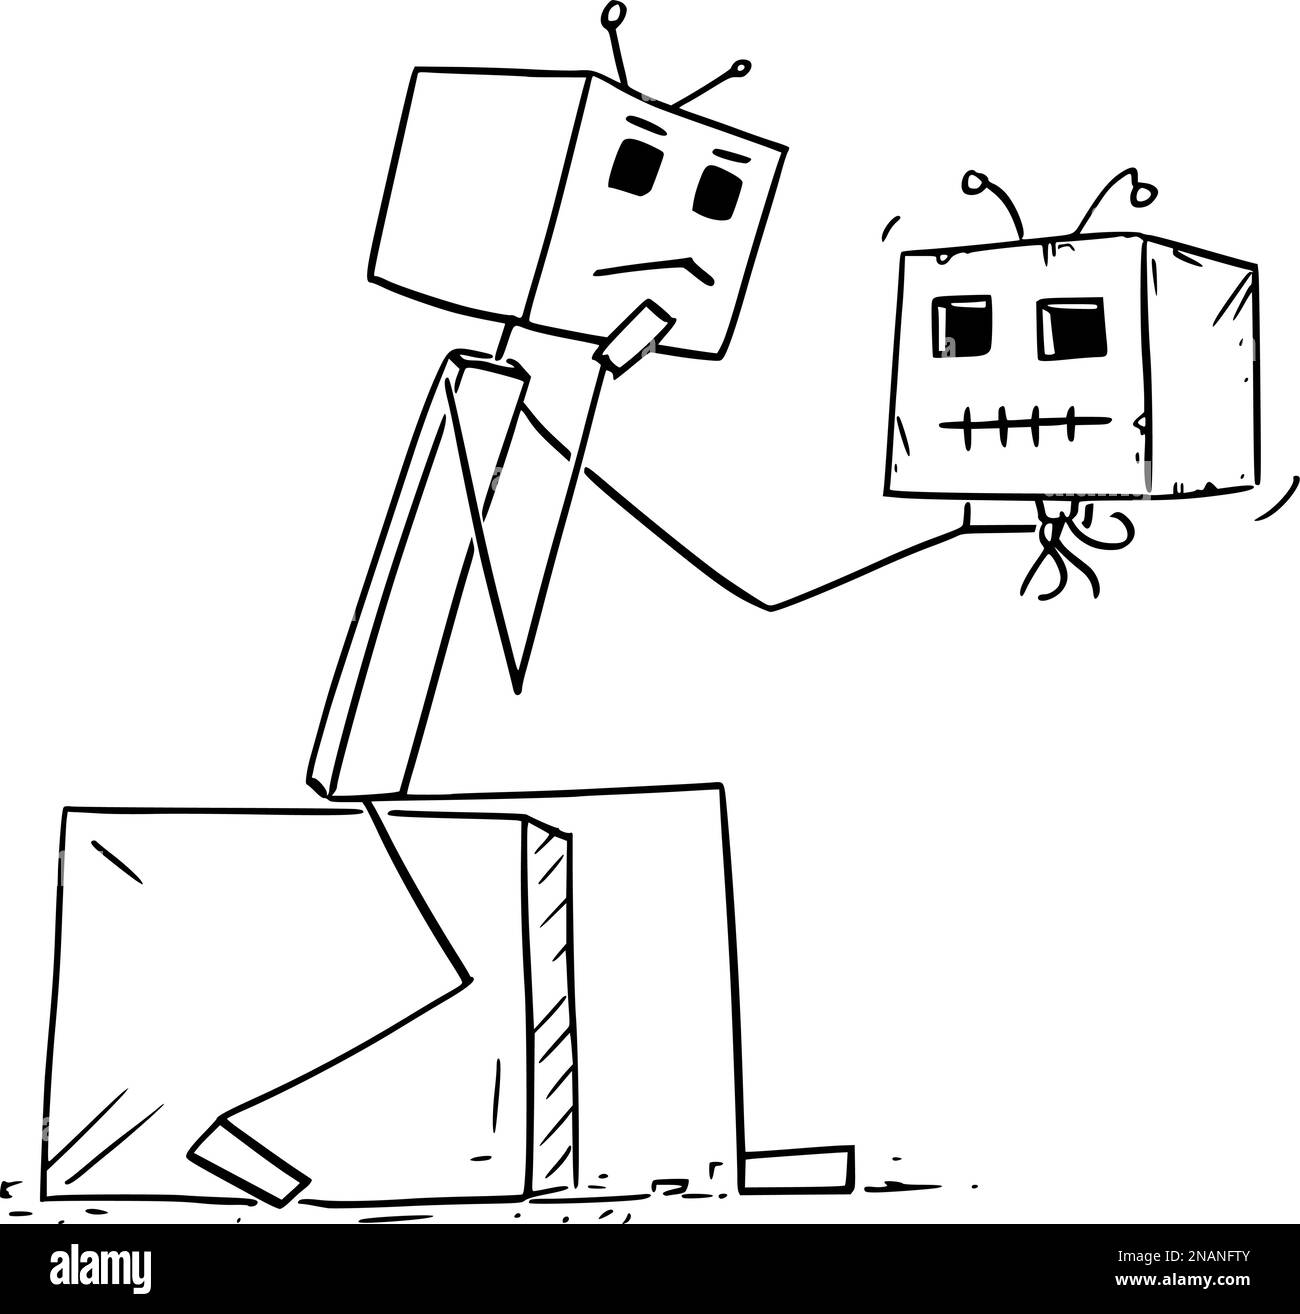 Hamlet oder Roboter, der den Kopf oder Schädel eines Roboters hält und an KI, Robotik und Technologie, Vektor-Cartoon-Strichfigur oder Charakterdarstellung denkt. Stock Vektor